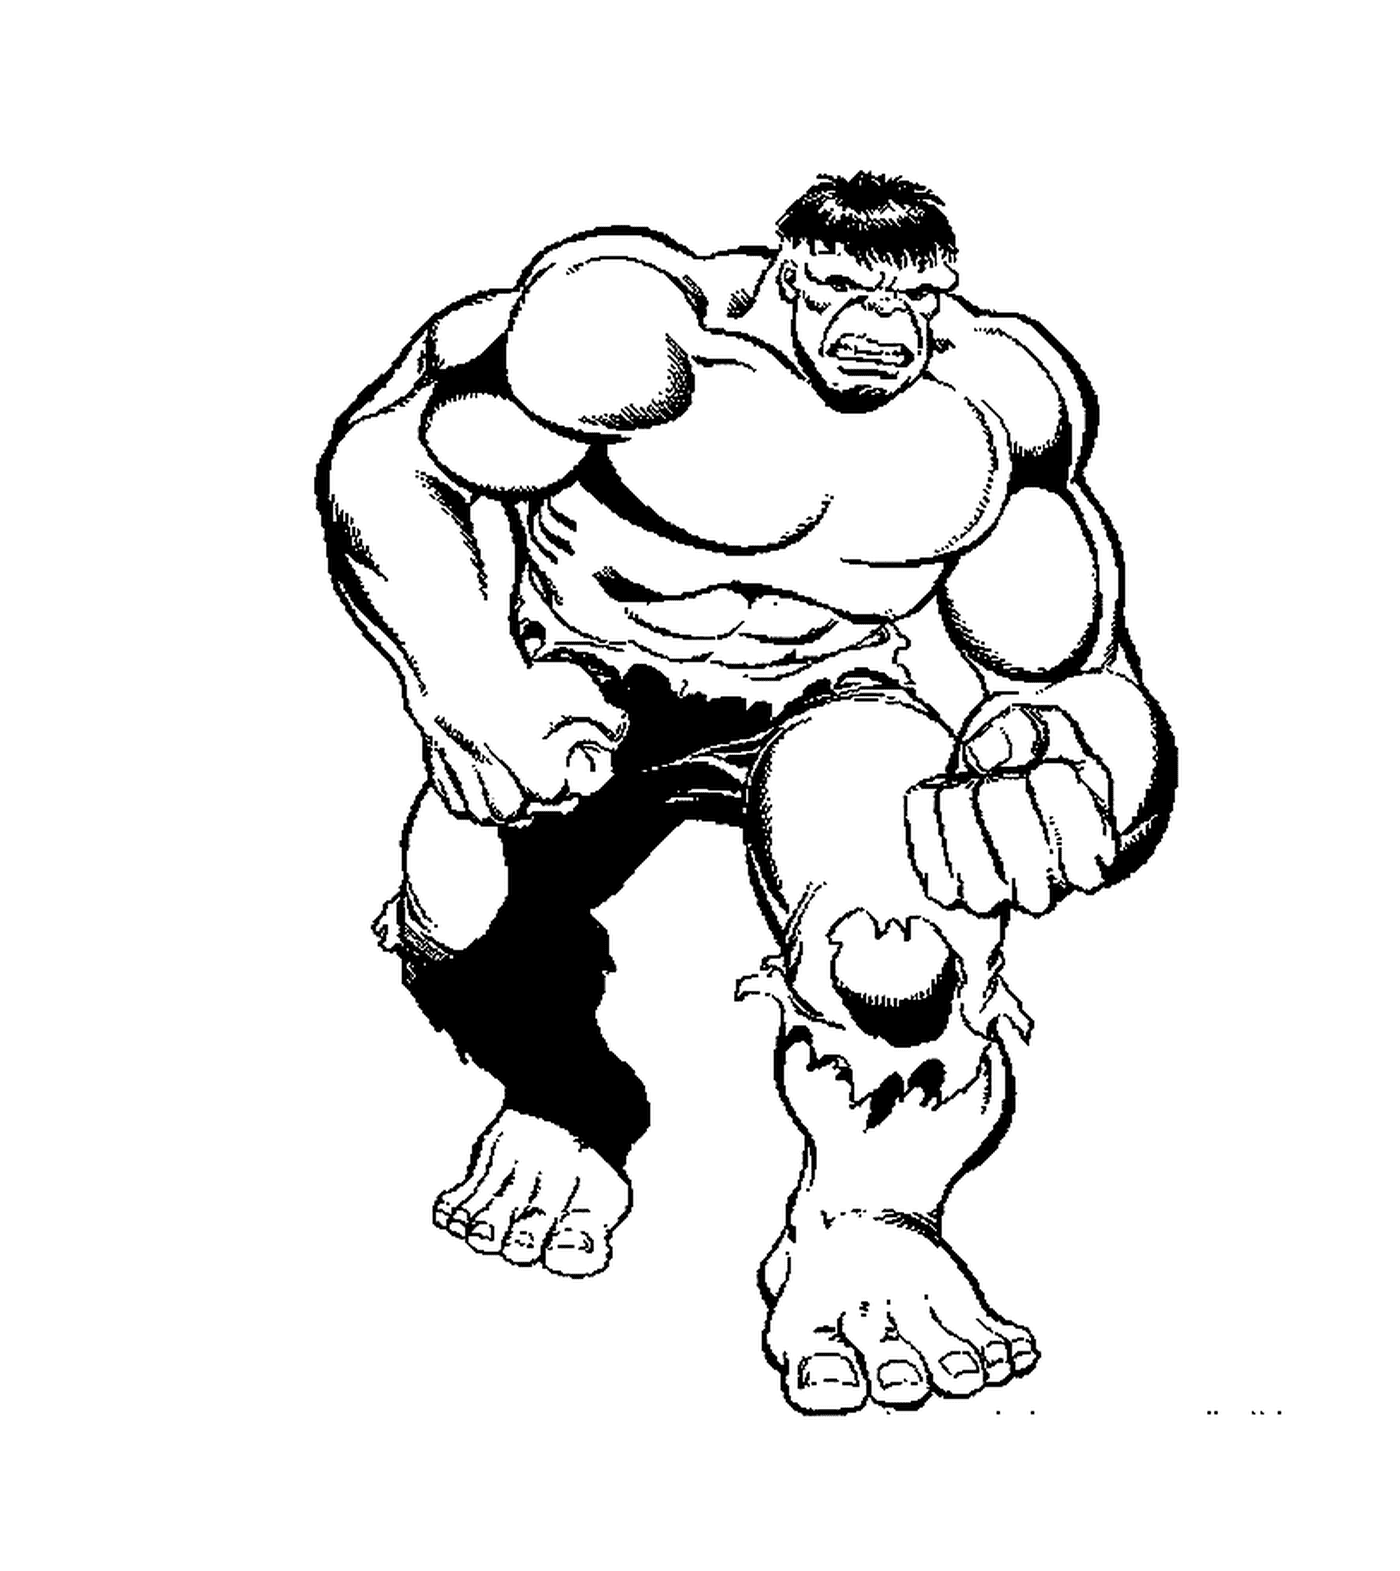  Hulk, versão simples 